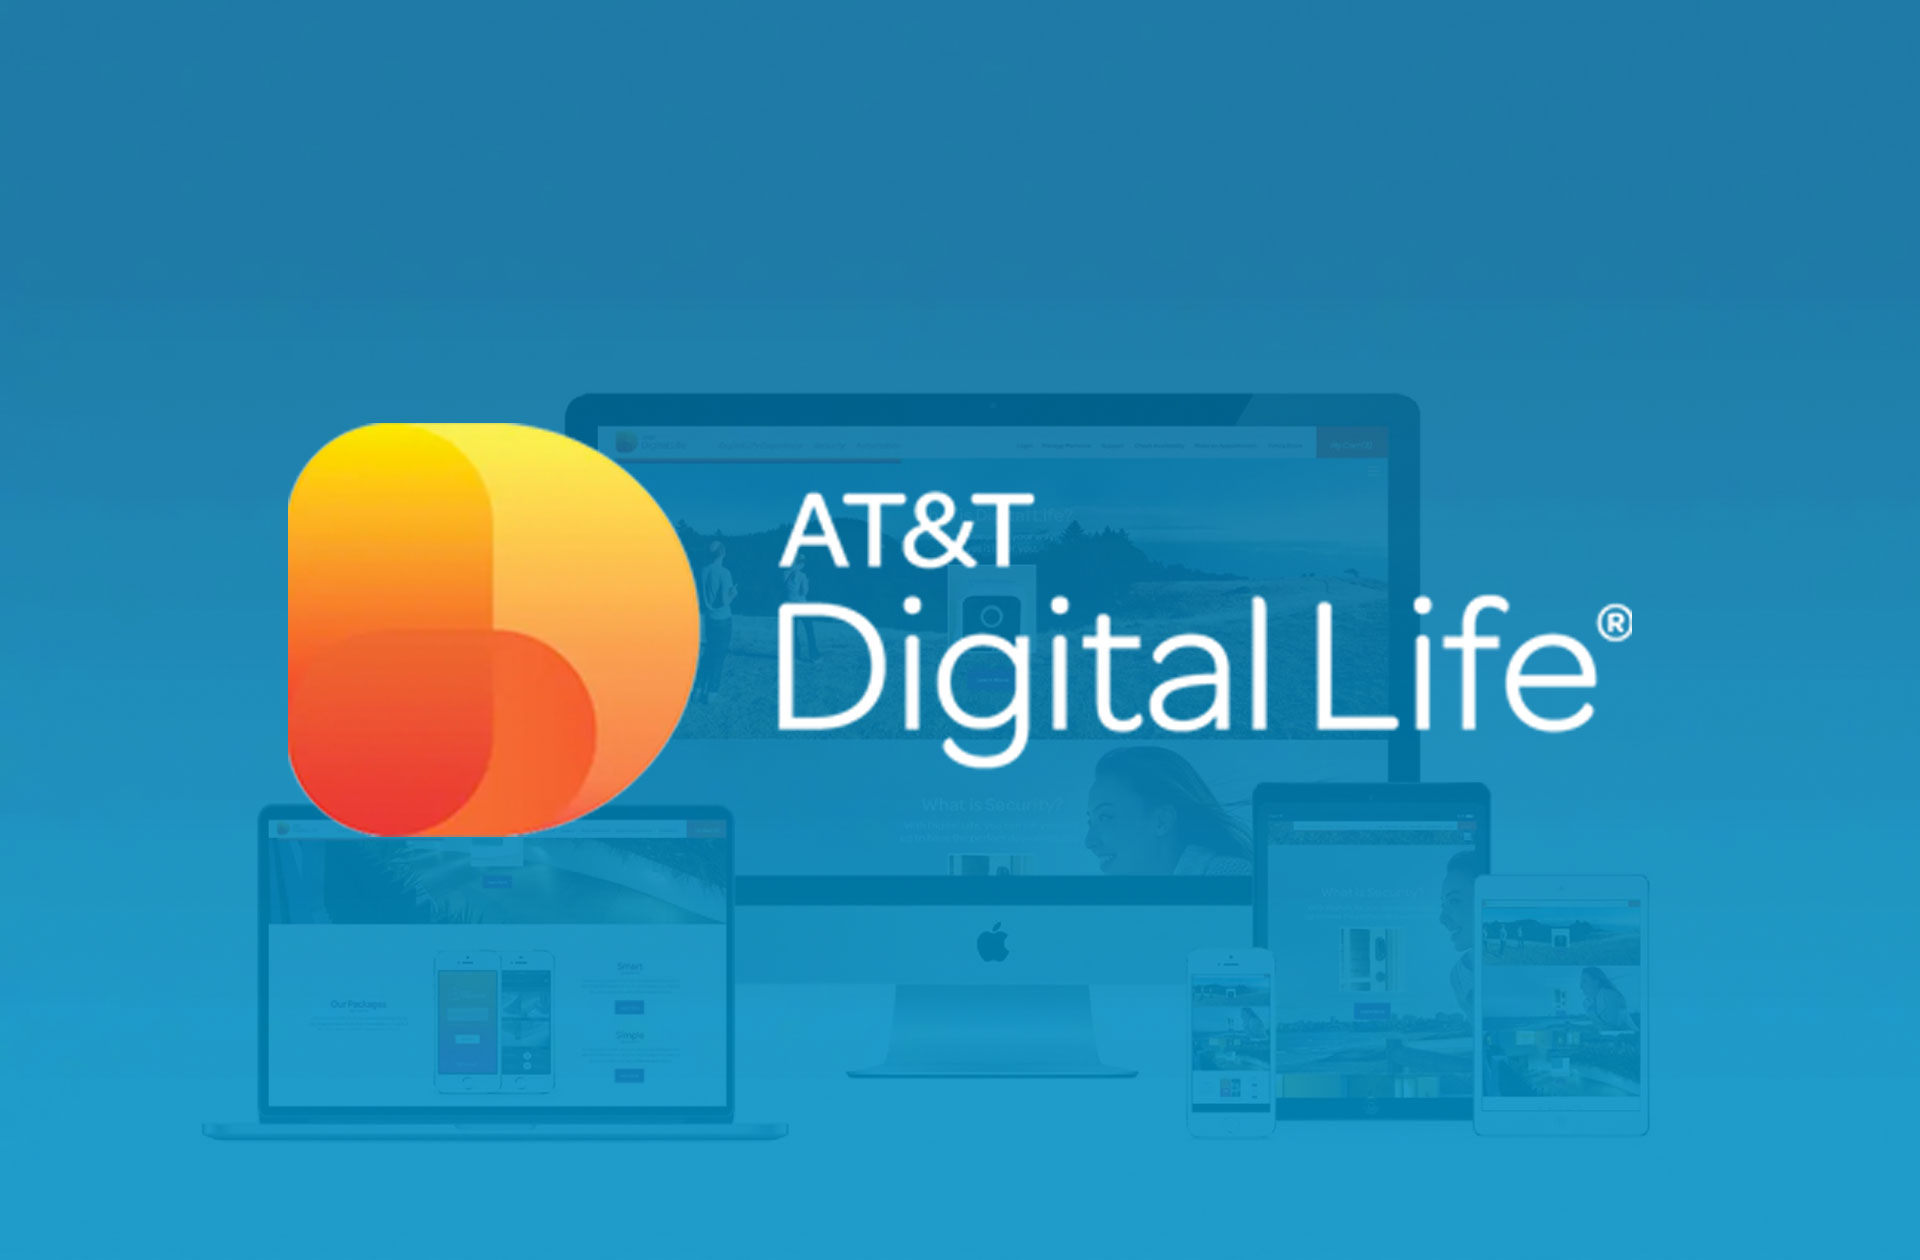 AT&T Digital Life Website & Mobile App